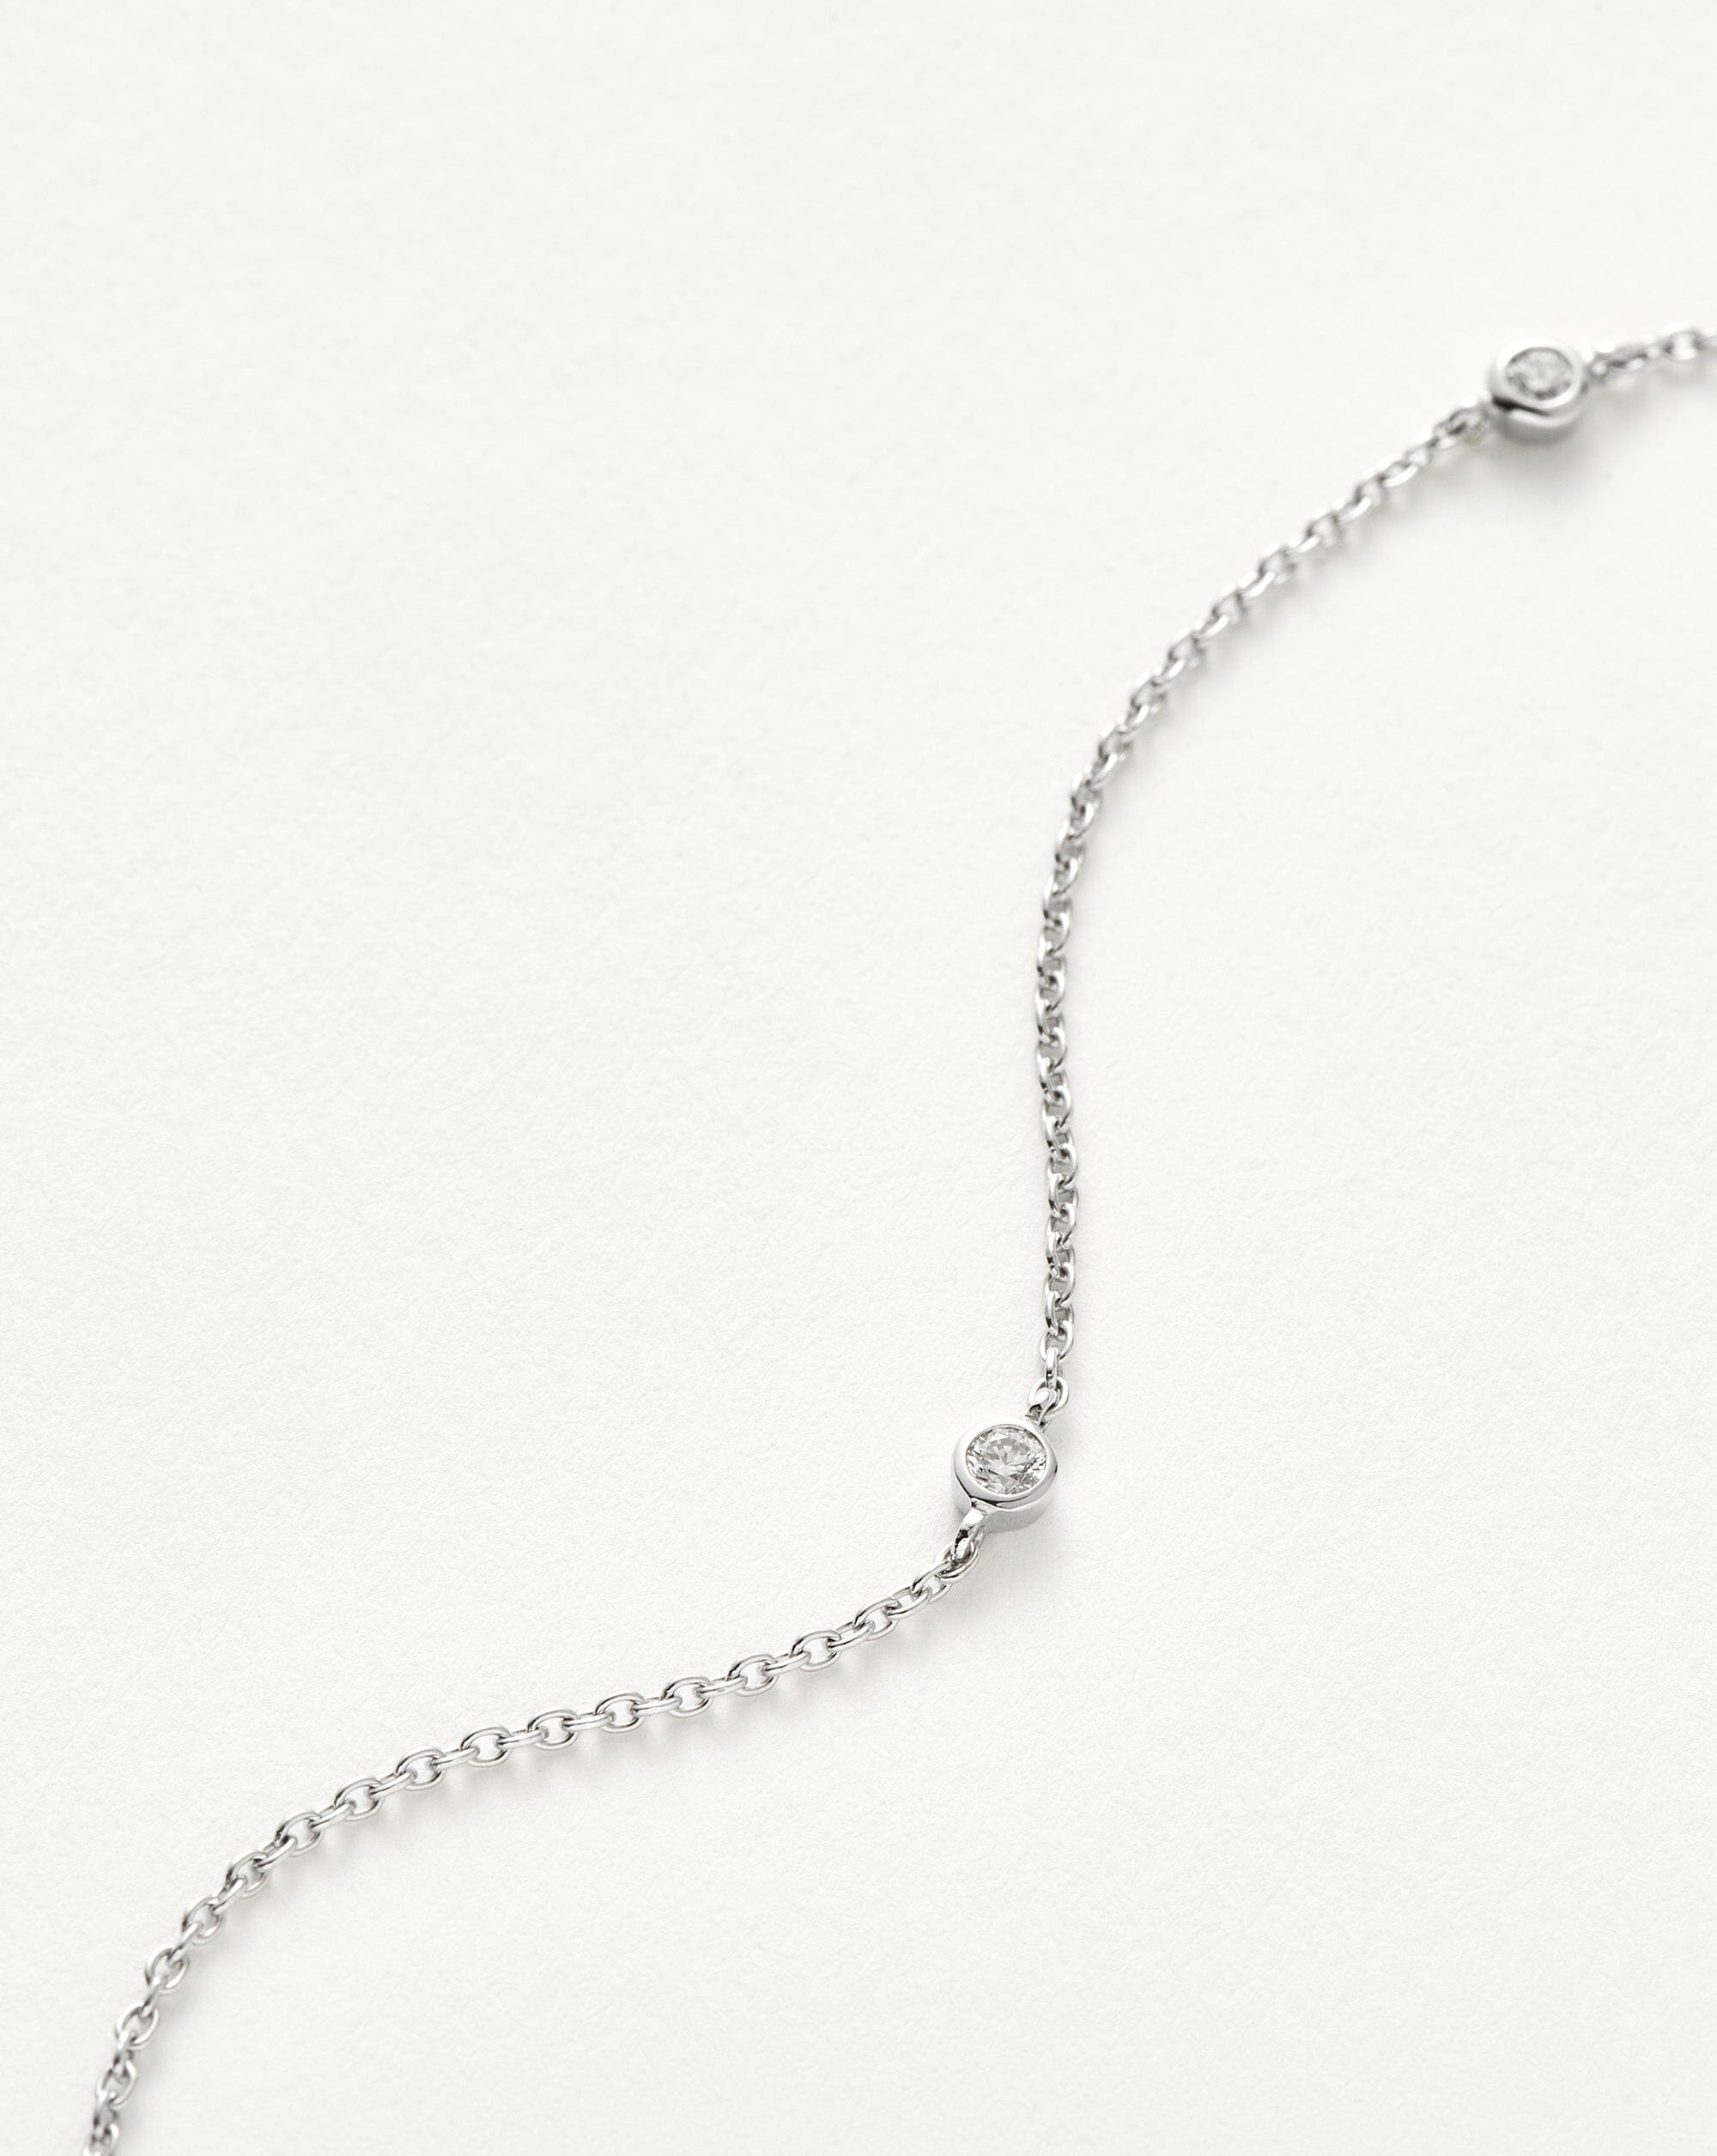 White Gold Necklace with Three White Diamonds | KLENOTA